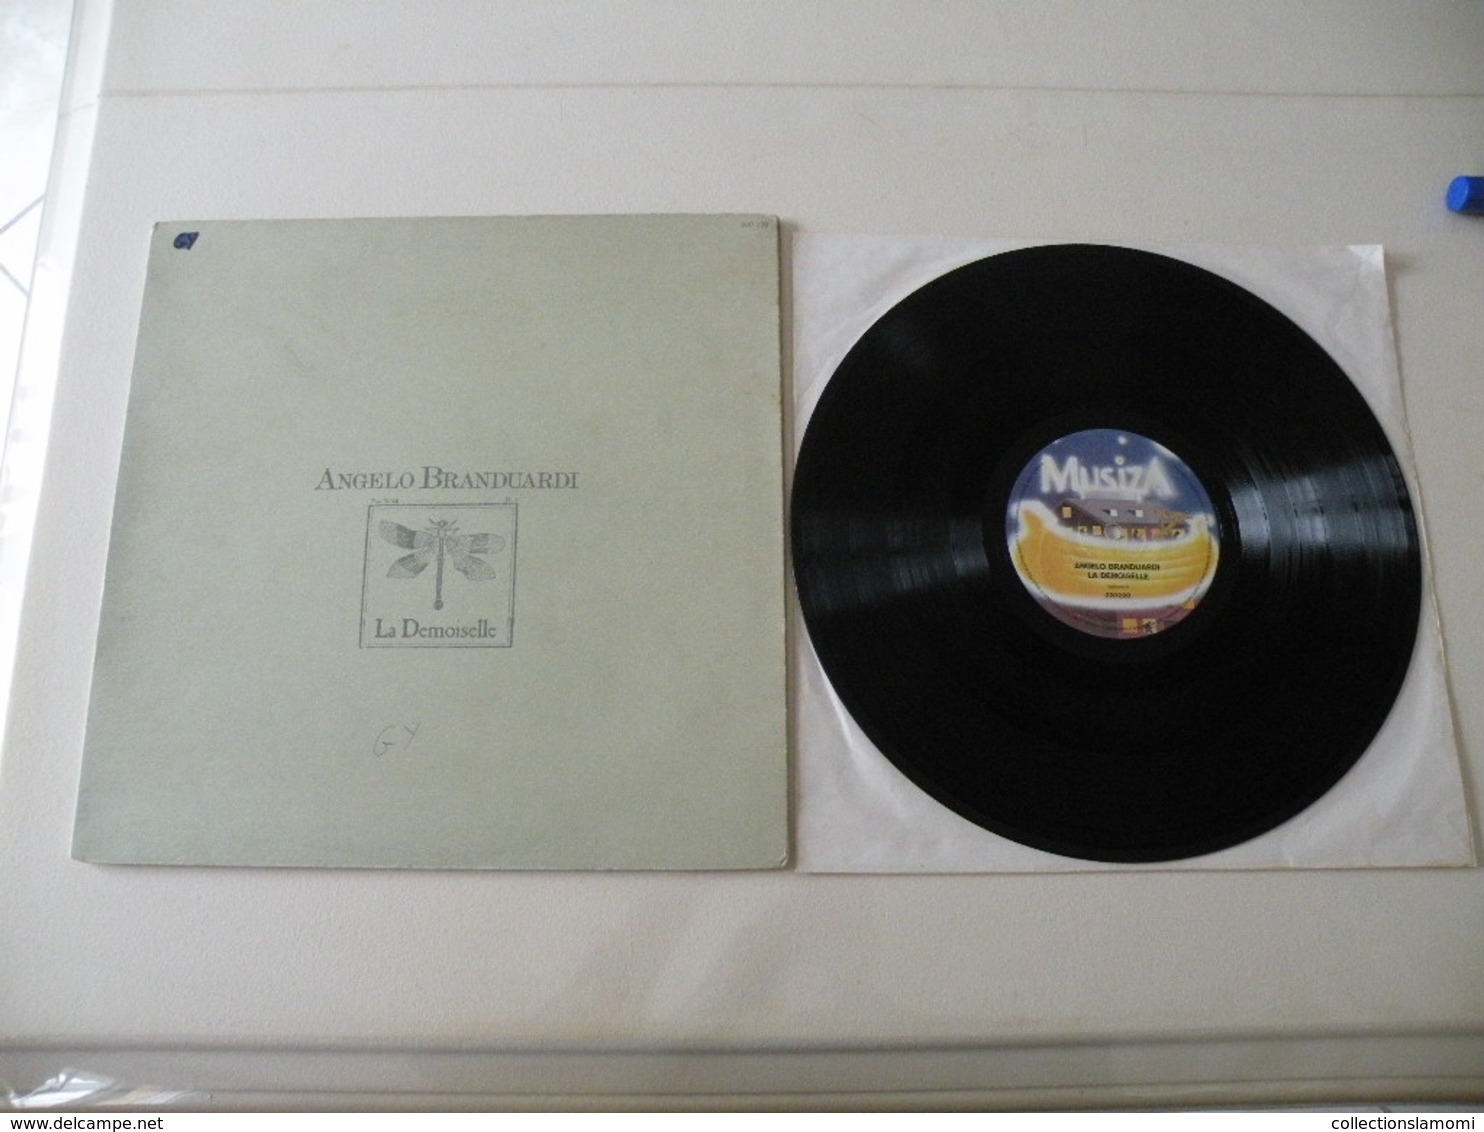 Angelo Branduardi 1979 (Titres Sur Photos) - Vinyle 33 T LP - Other - Italian Music